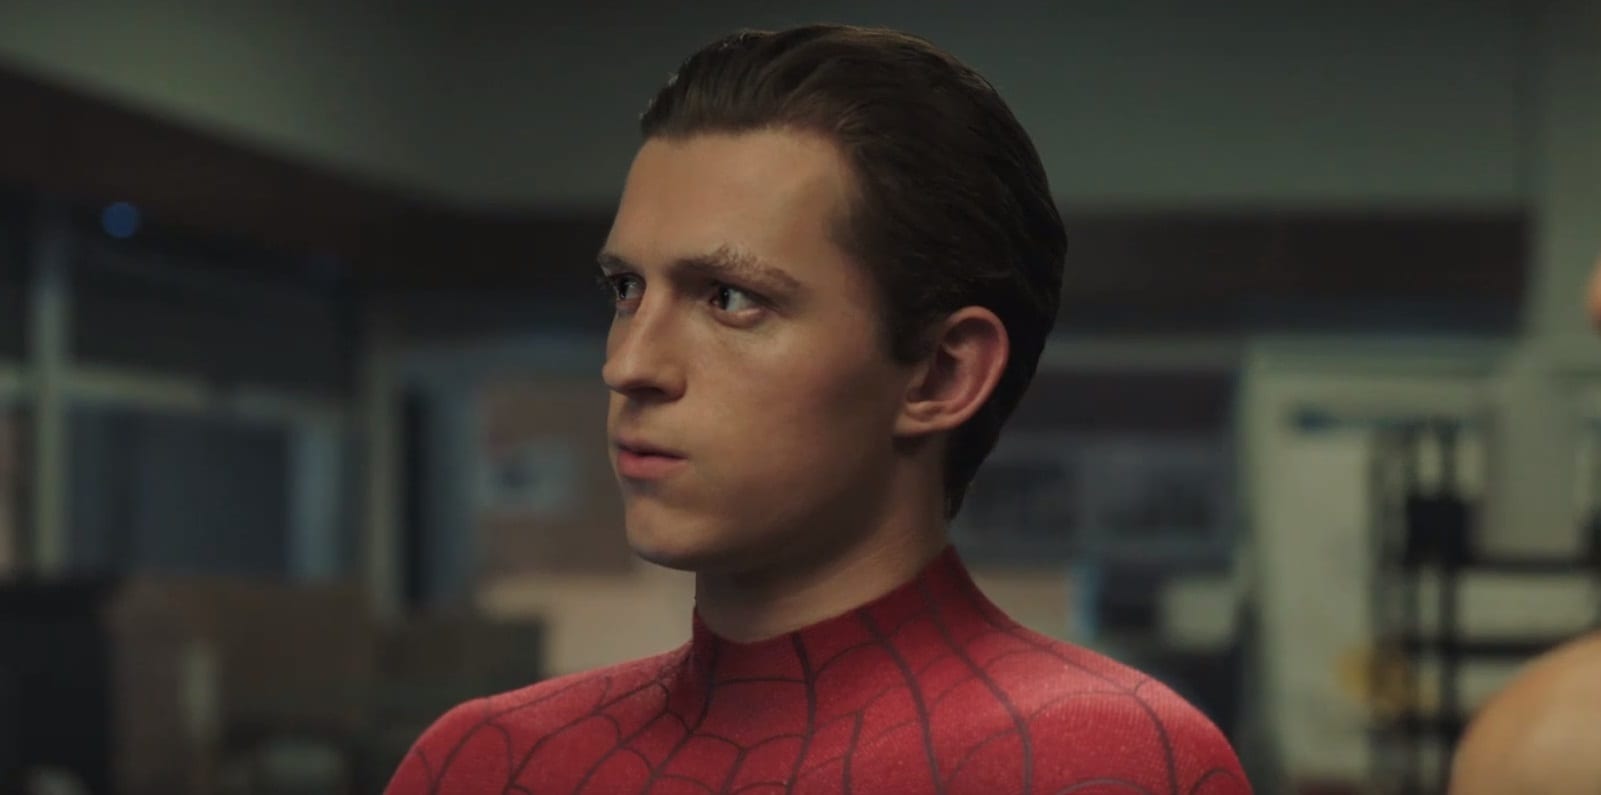 SPOILERS: Kevin Feige de Marvel sobre cómo el final de Far From Home afectará a Spider-Man en el futuro